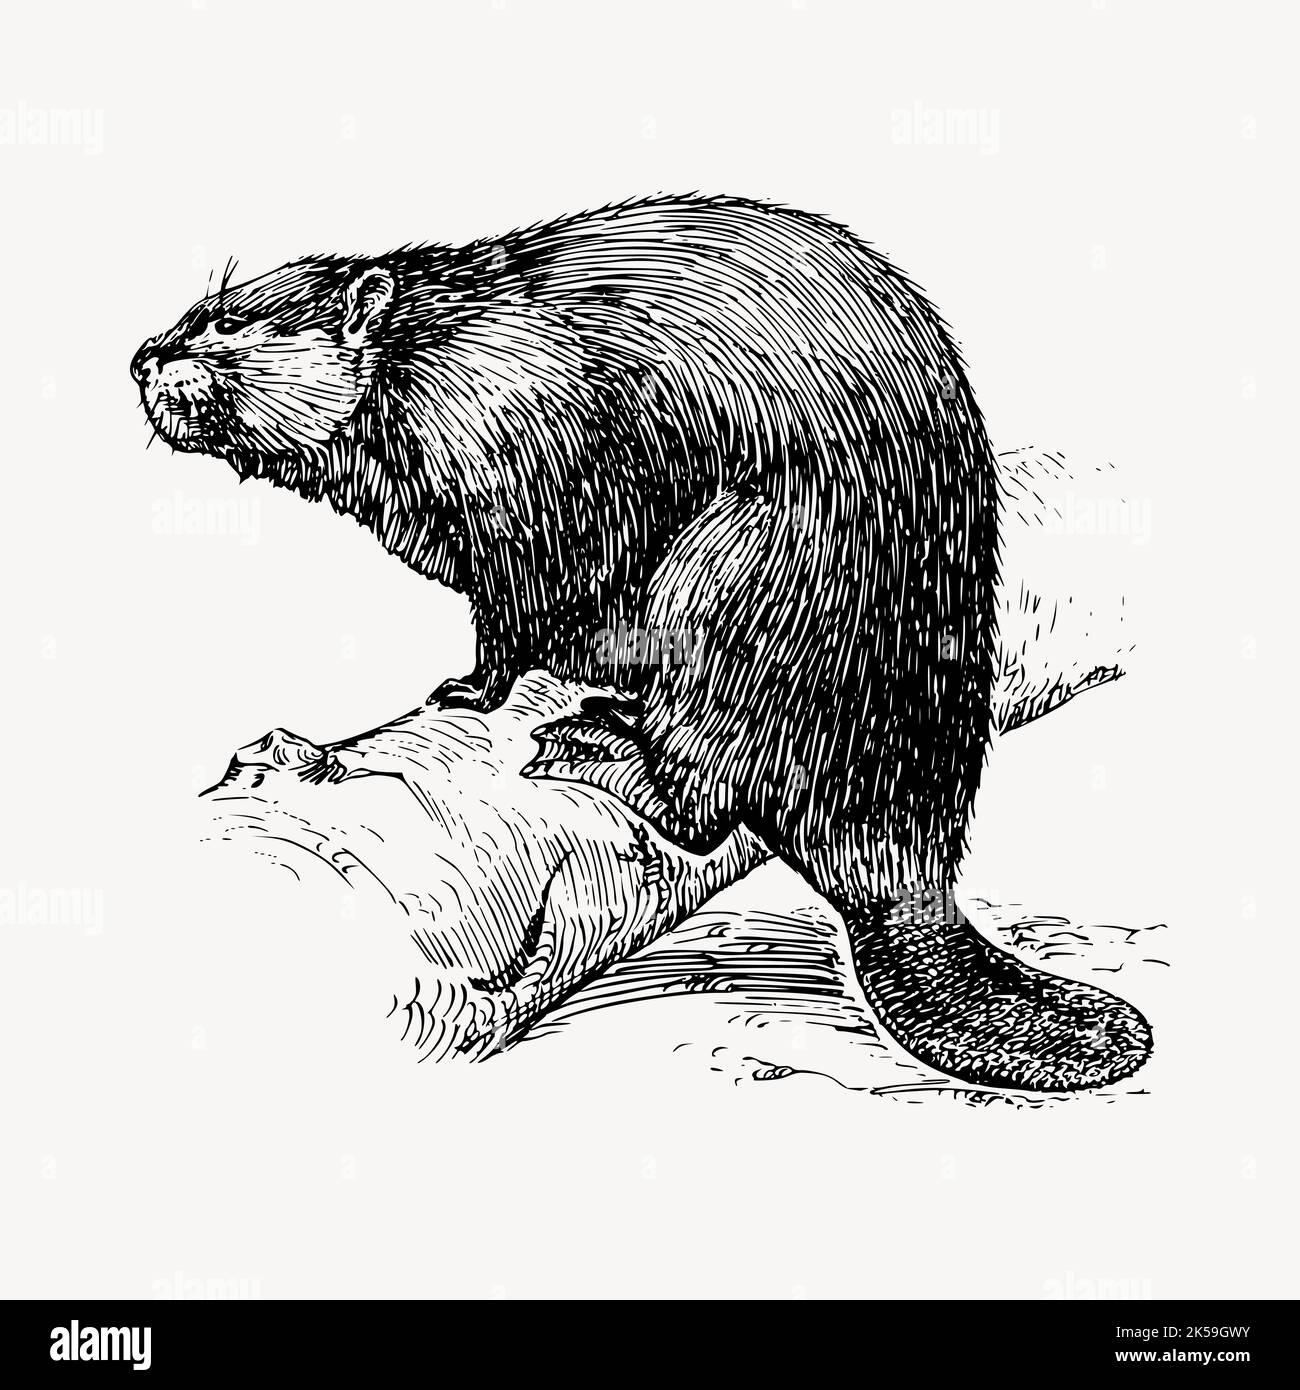 Vecteur clipart d'illustration Beaver. Illustration de Vecteur